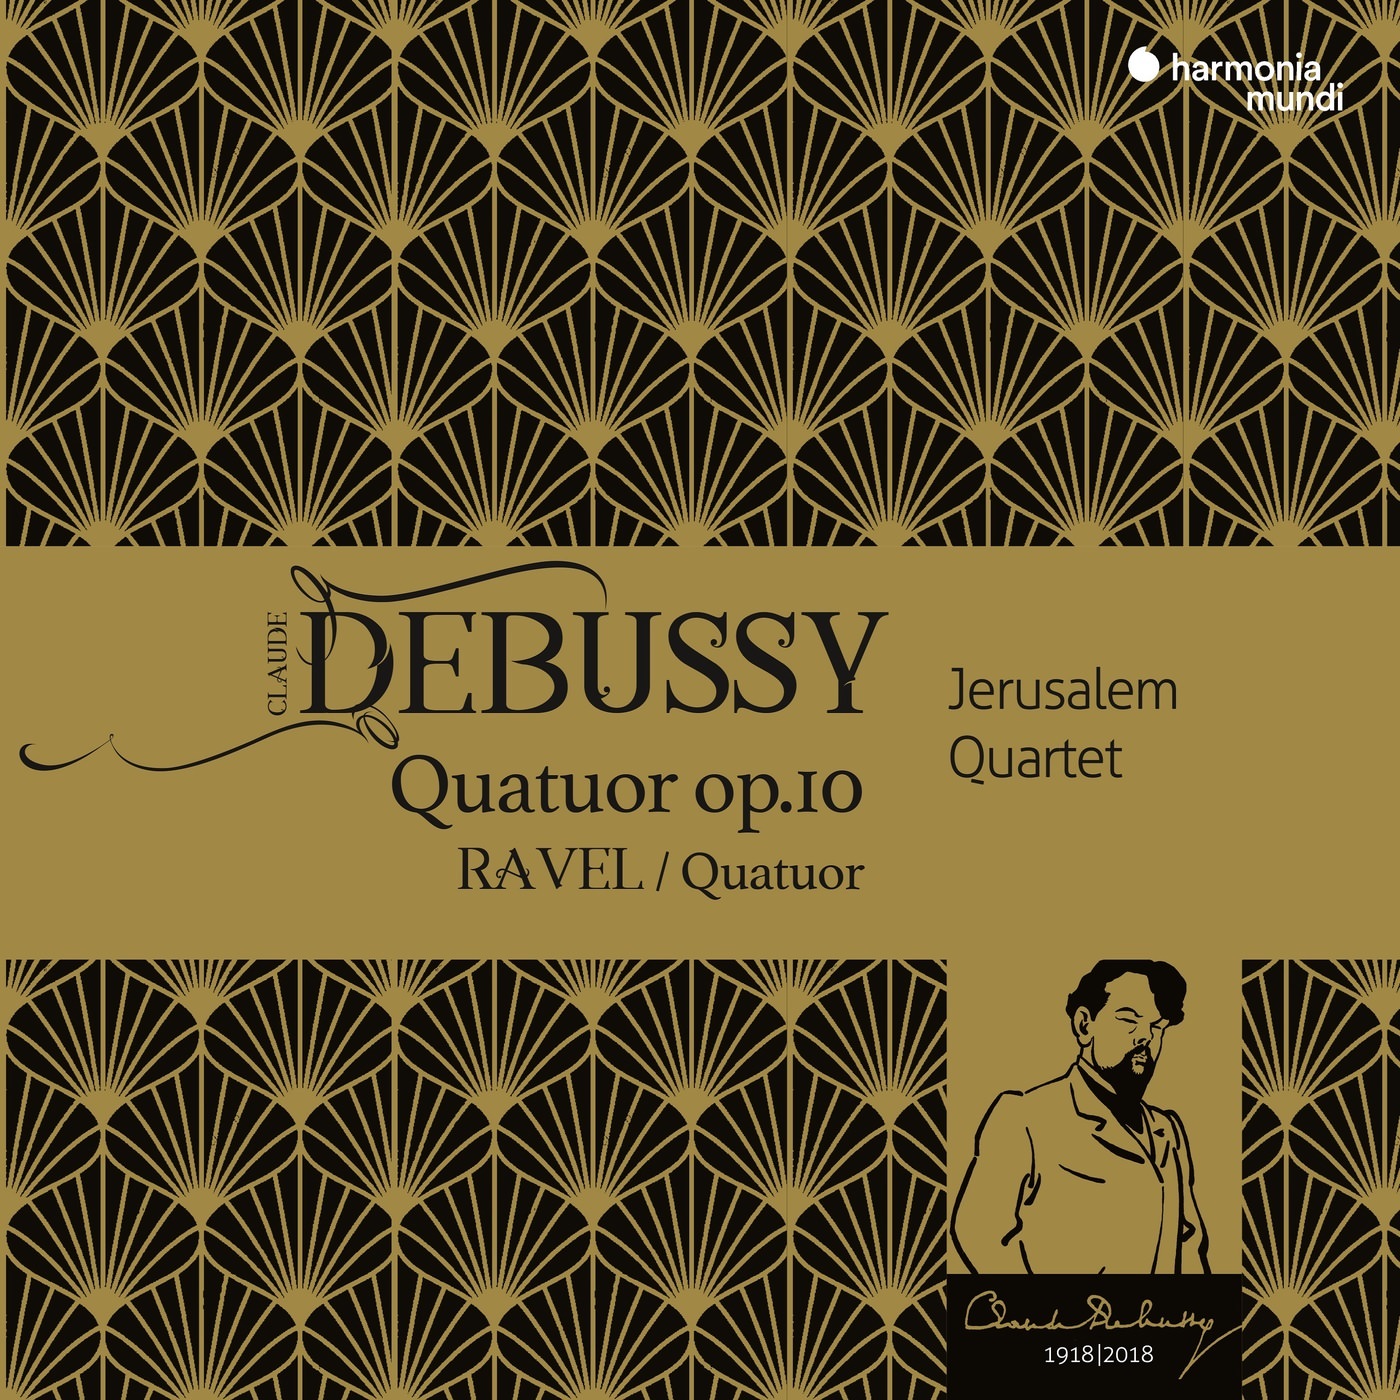 Jerusalem Quartet - Debussy & Ravel: String Quartets (2018) [FLAC 24bit/96kHz]